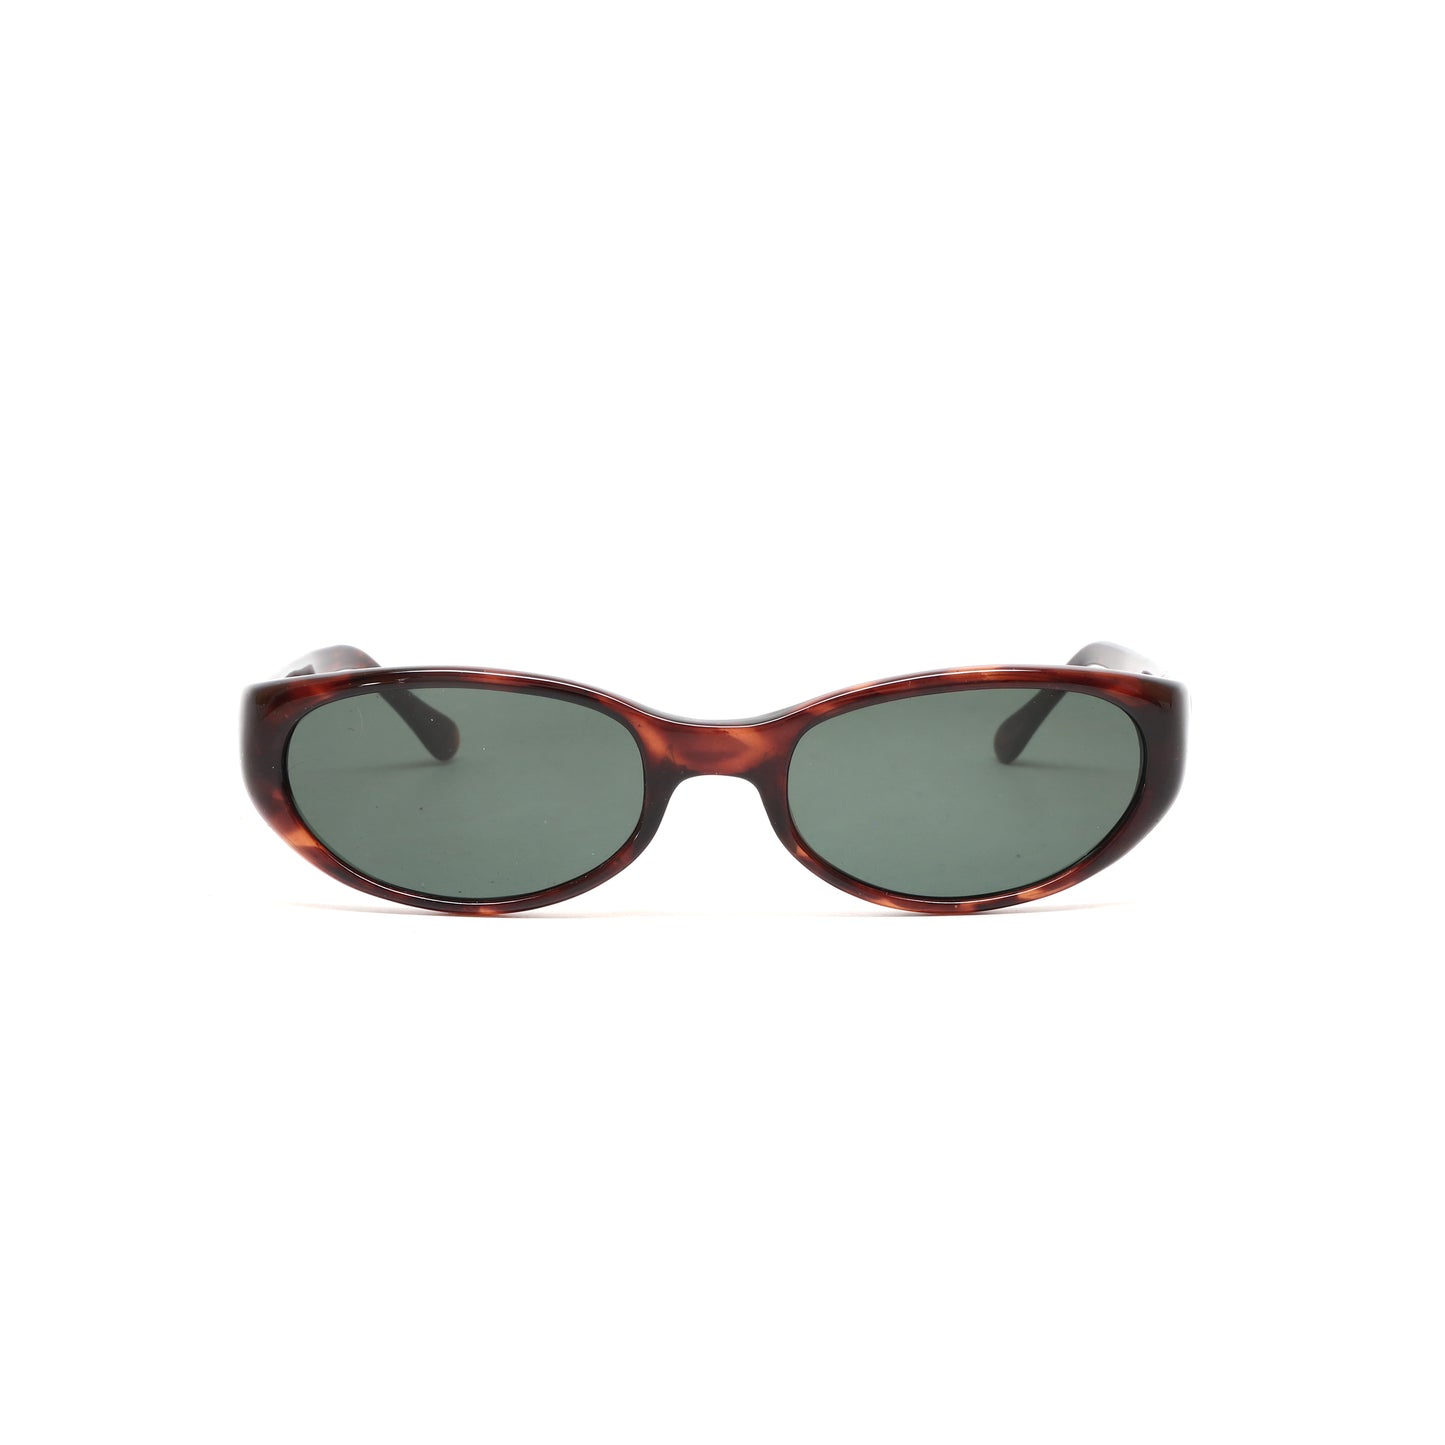 Vintage 90s Elaine Mod Oval Shaped Sunglasses - Tortoise